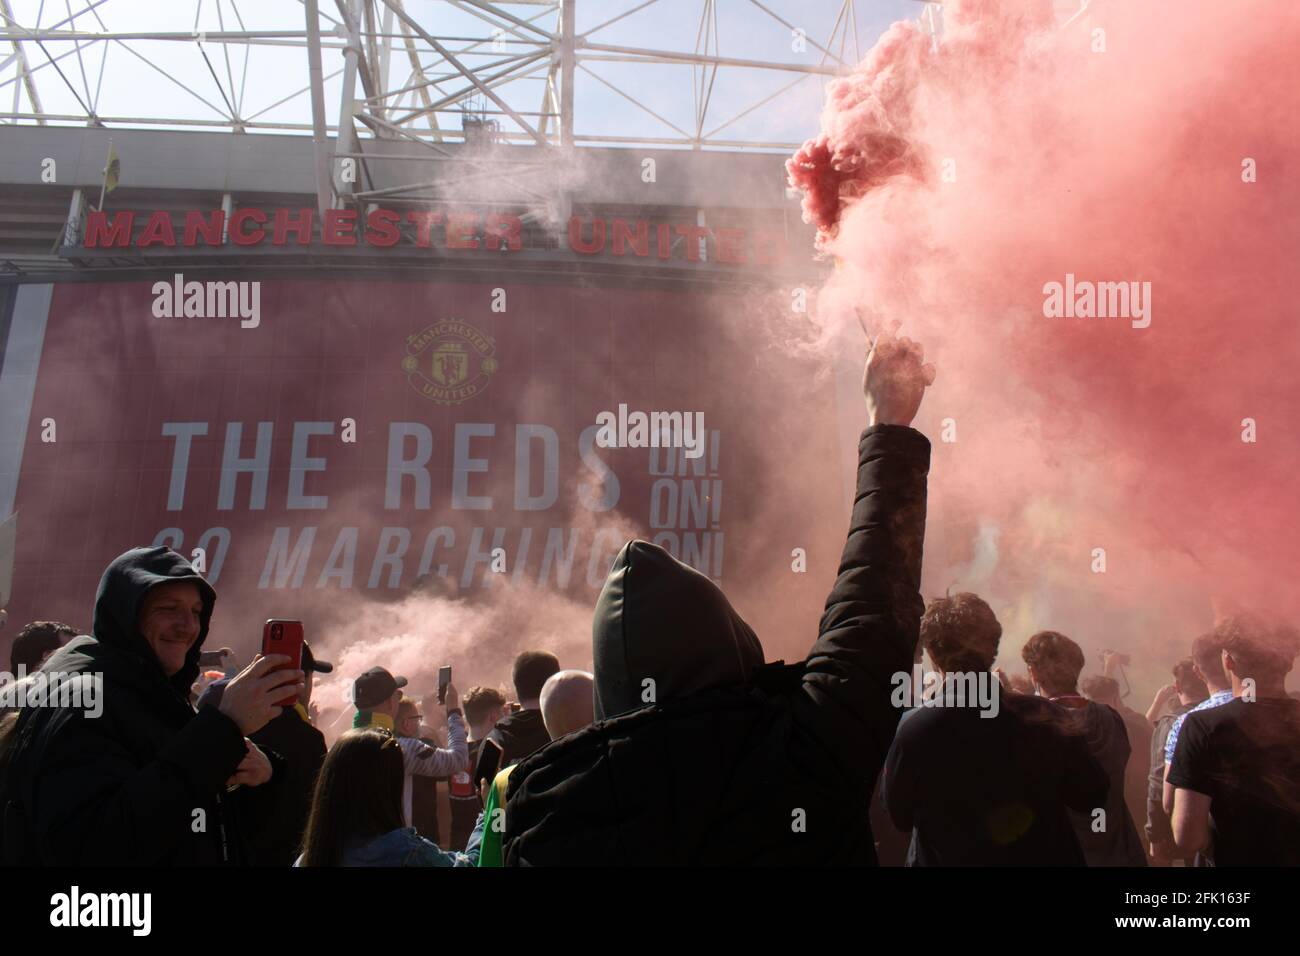 Protestation contre Glazer sur le terrain de football d'Old Trafford . Support tenant une flamme rouge. Afficher les rouges. Stade Manchester United, Royaume-Uni. Banque D'Images